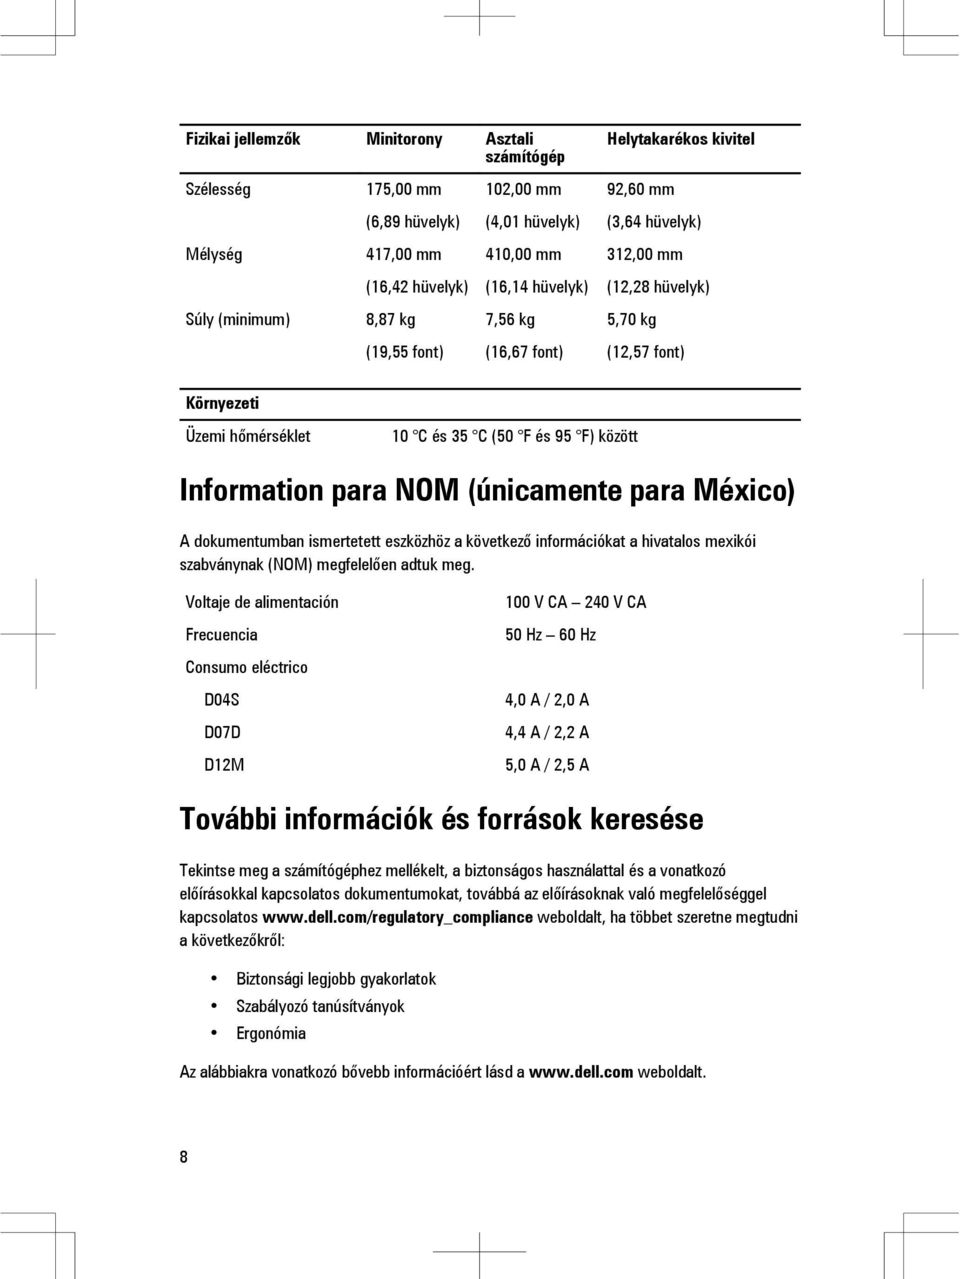 NOM (únicamente para México) A dokumentumban ismertetett eszközhöz a következő információkat a hivatalos mexikói szabványnak (NOM) megfelelően adtuk meg.